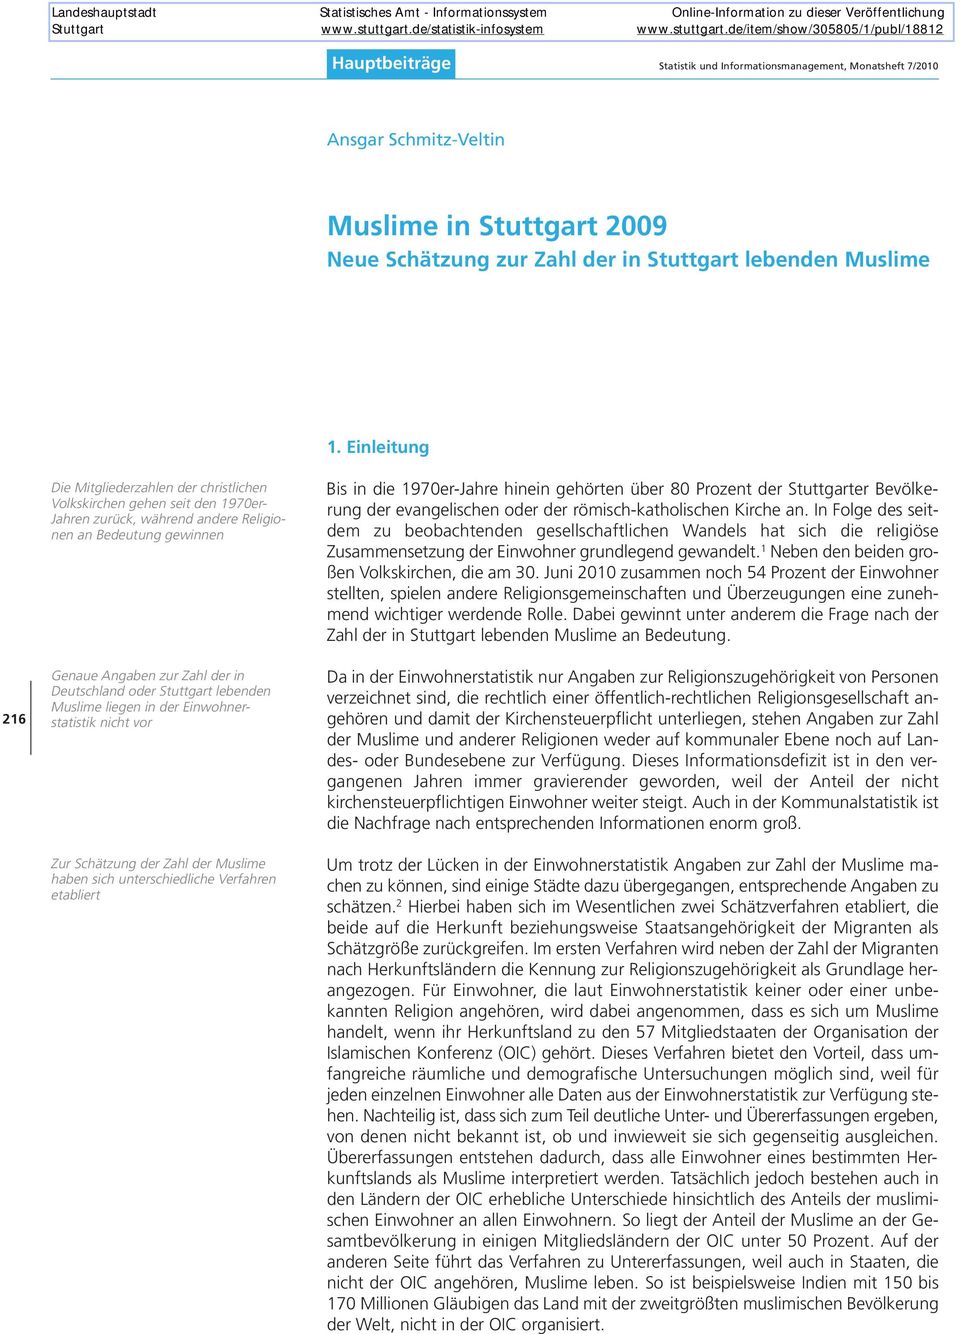 Stuttgart lebenden Muslime liegen in der Einwohnerstatistik nicht vor Zur Schätzung der Zahl der Muslime haben sich unterschiedliche Verfahren etabliert Bis in die 1970er-Jahre hinein gehörten über